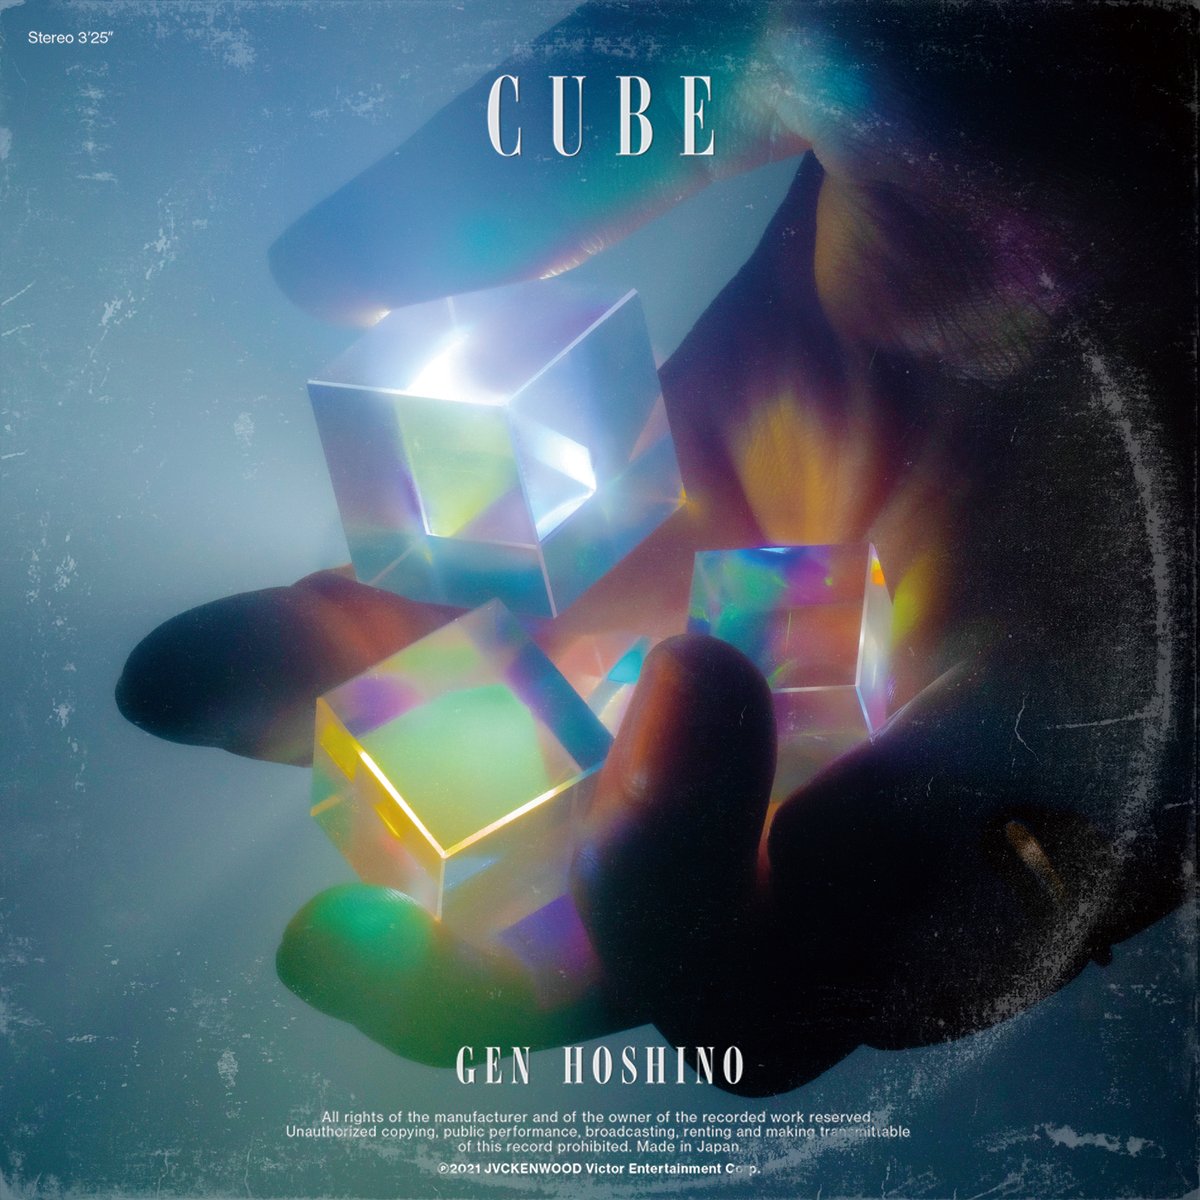 『星野源 - Cube 歌詞』収録の『Cube』ジャケット